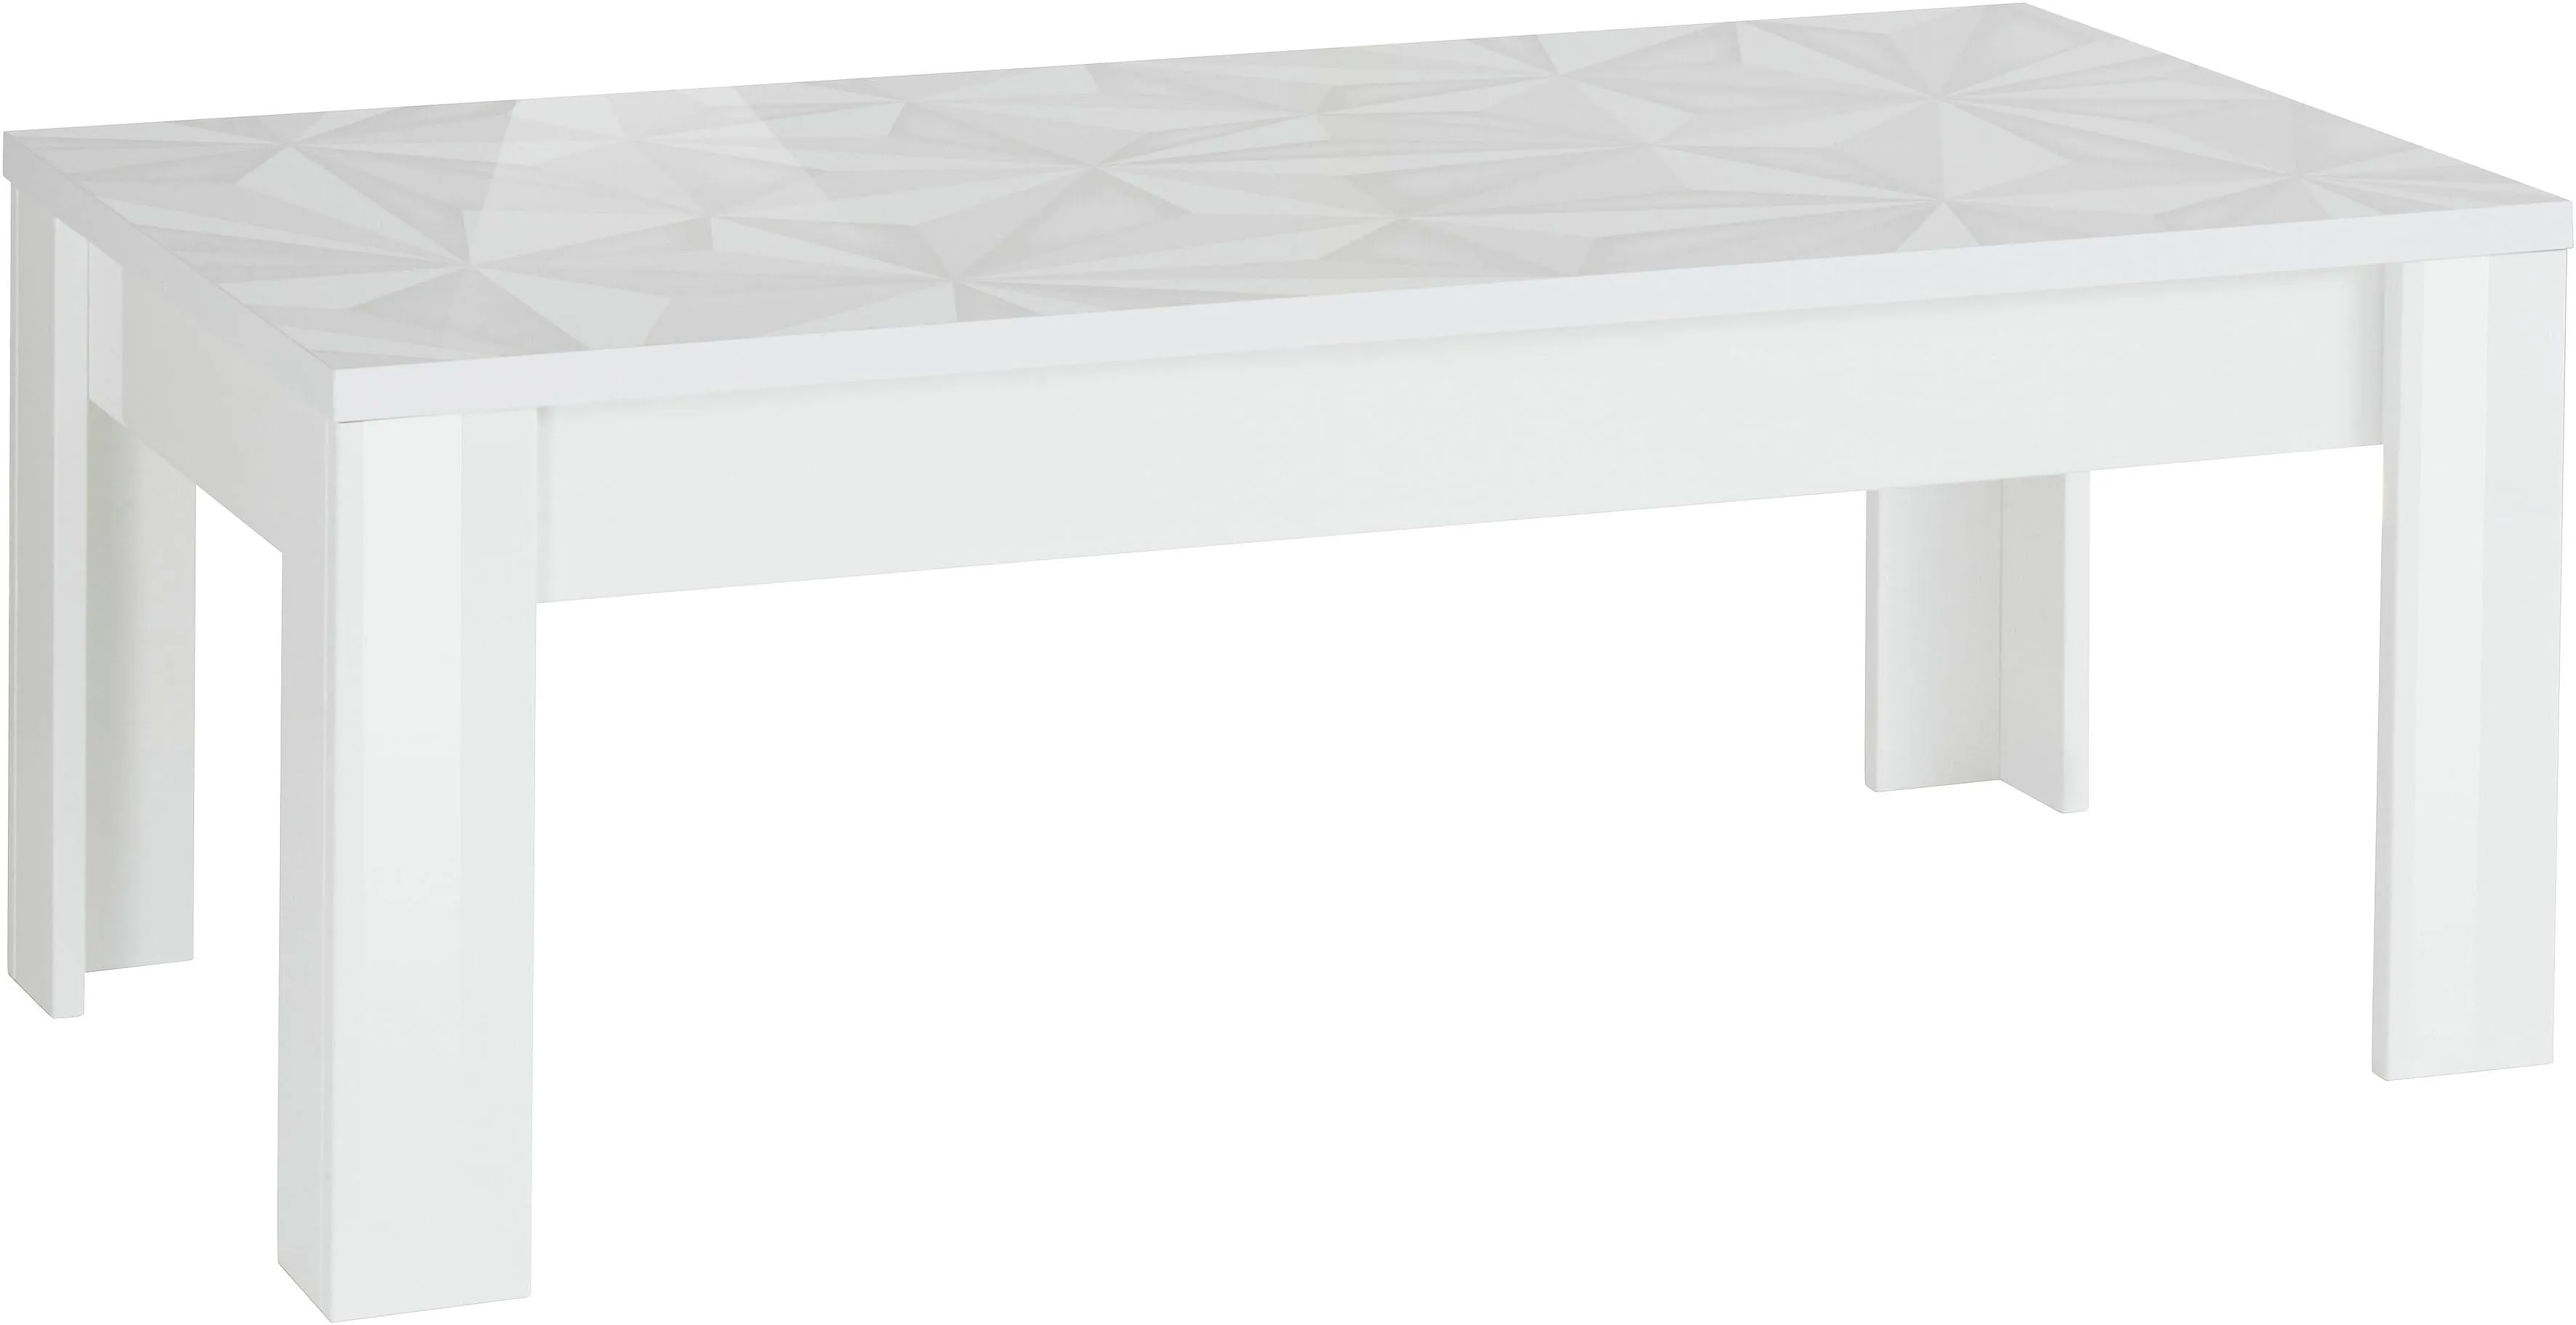 Couchtisch INOSIGN "Prisma" Tische weiß (weiß hochglanz lack, mit siebdruck lack) Couchtisch Eckige Couchtische eckig Breite 122 cm